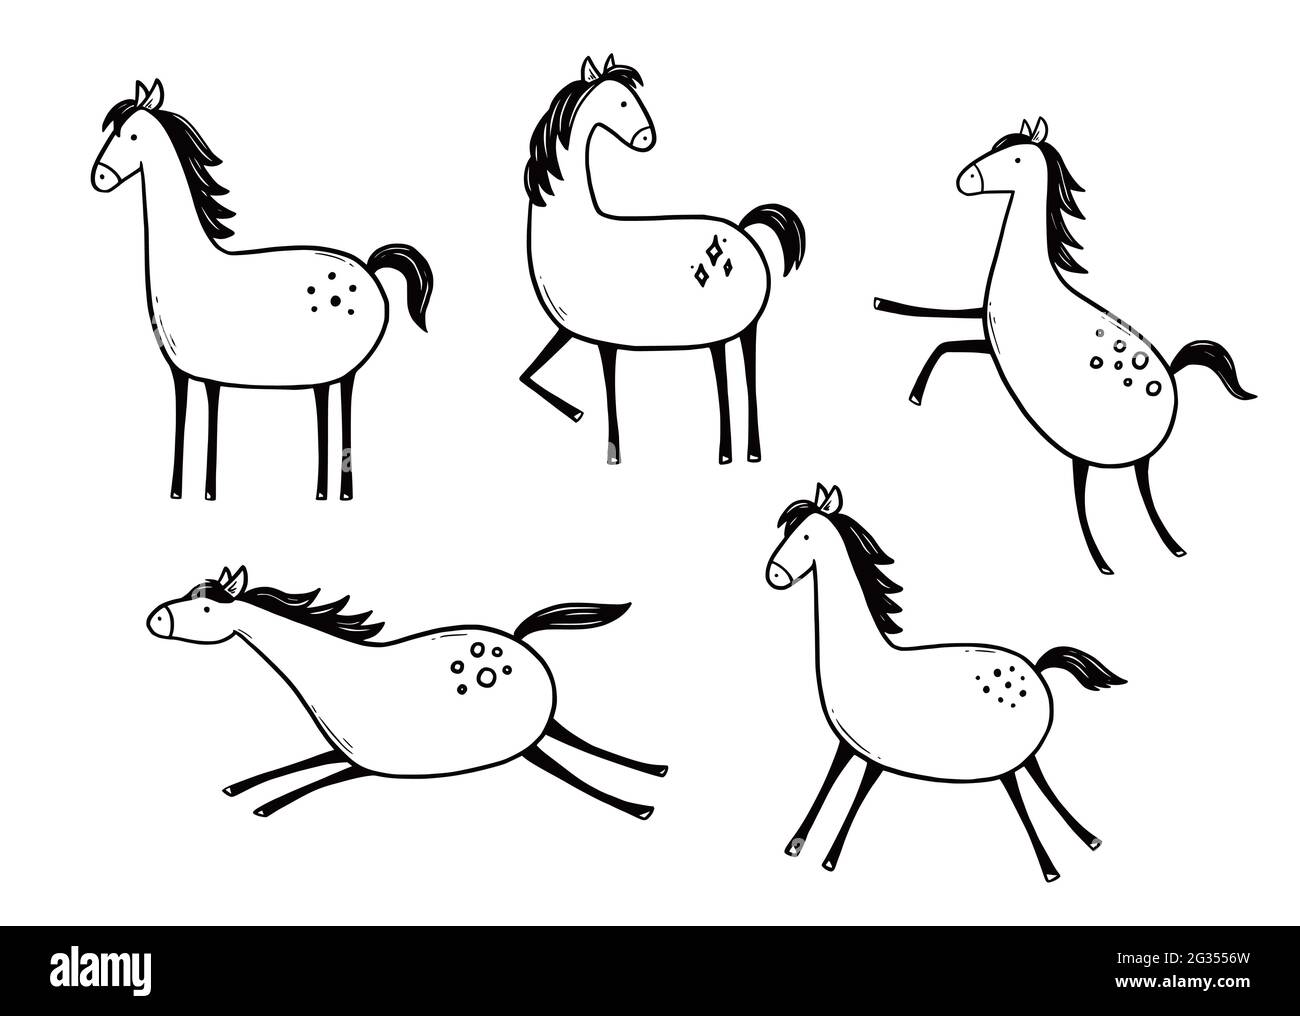 Doodle Horse Set. Stile di schizzo disegnato a mano. Carino cavallo per bambini, bambini illustrazione vettoriale. Illustrazione Vettoriale